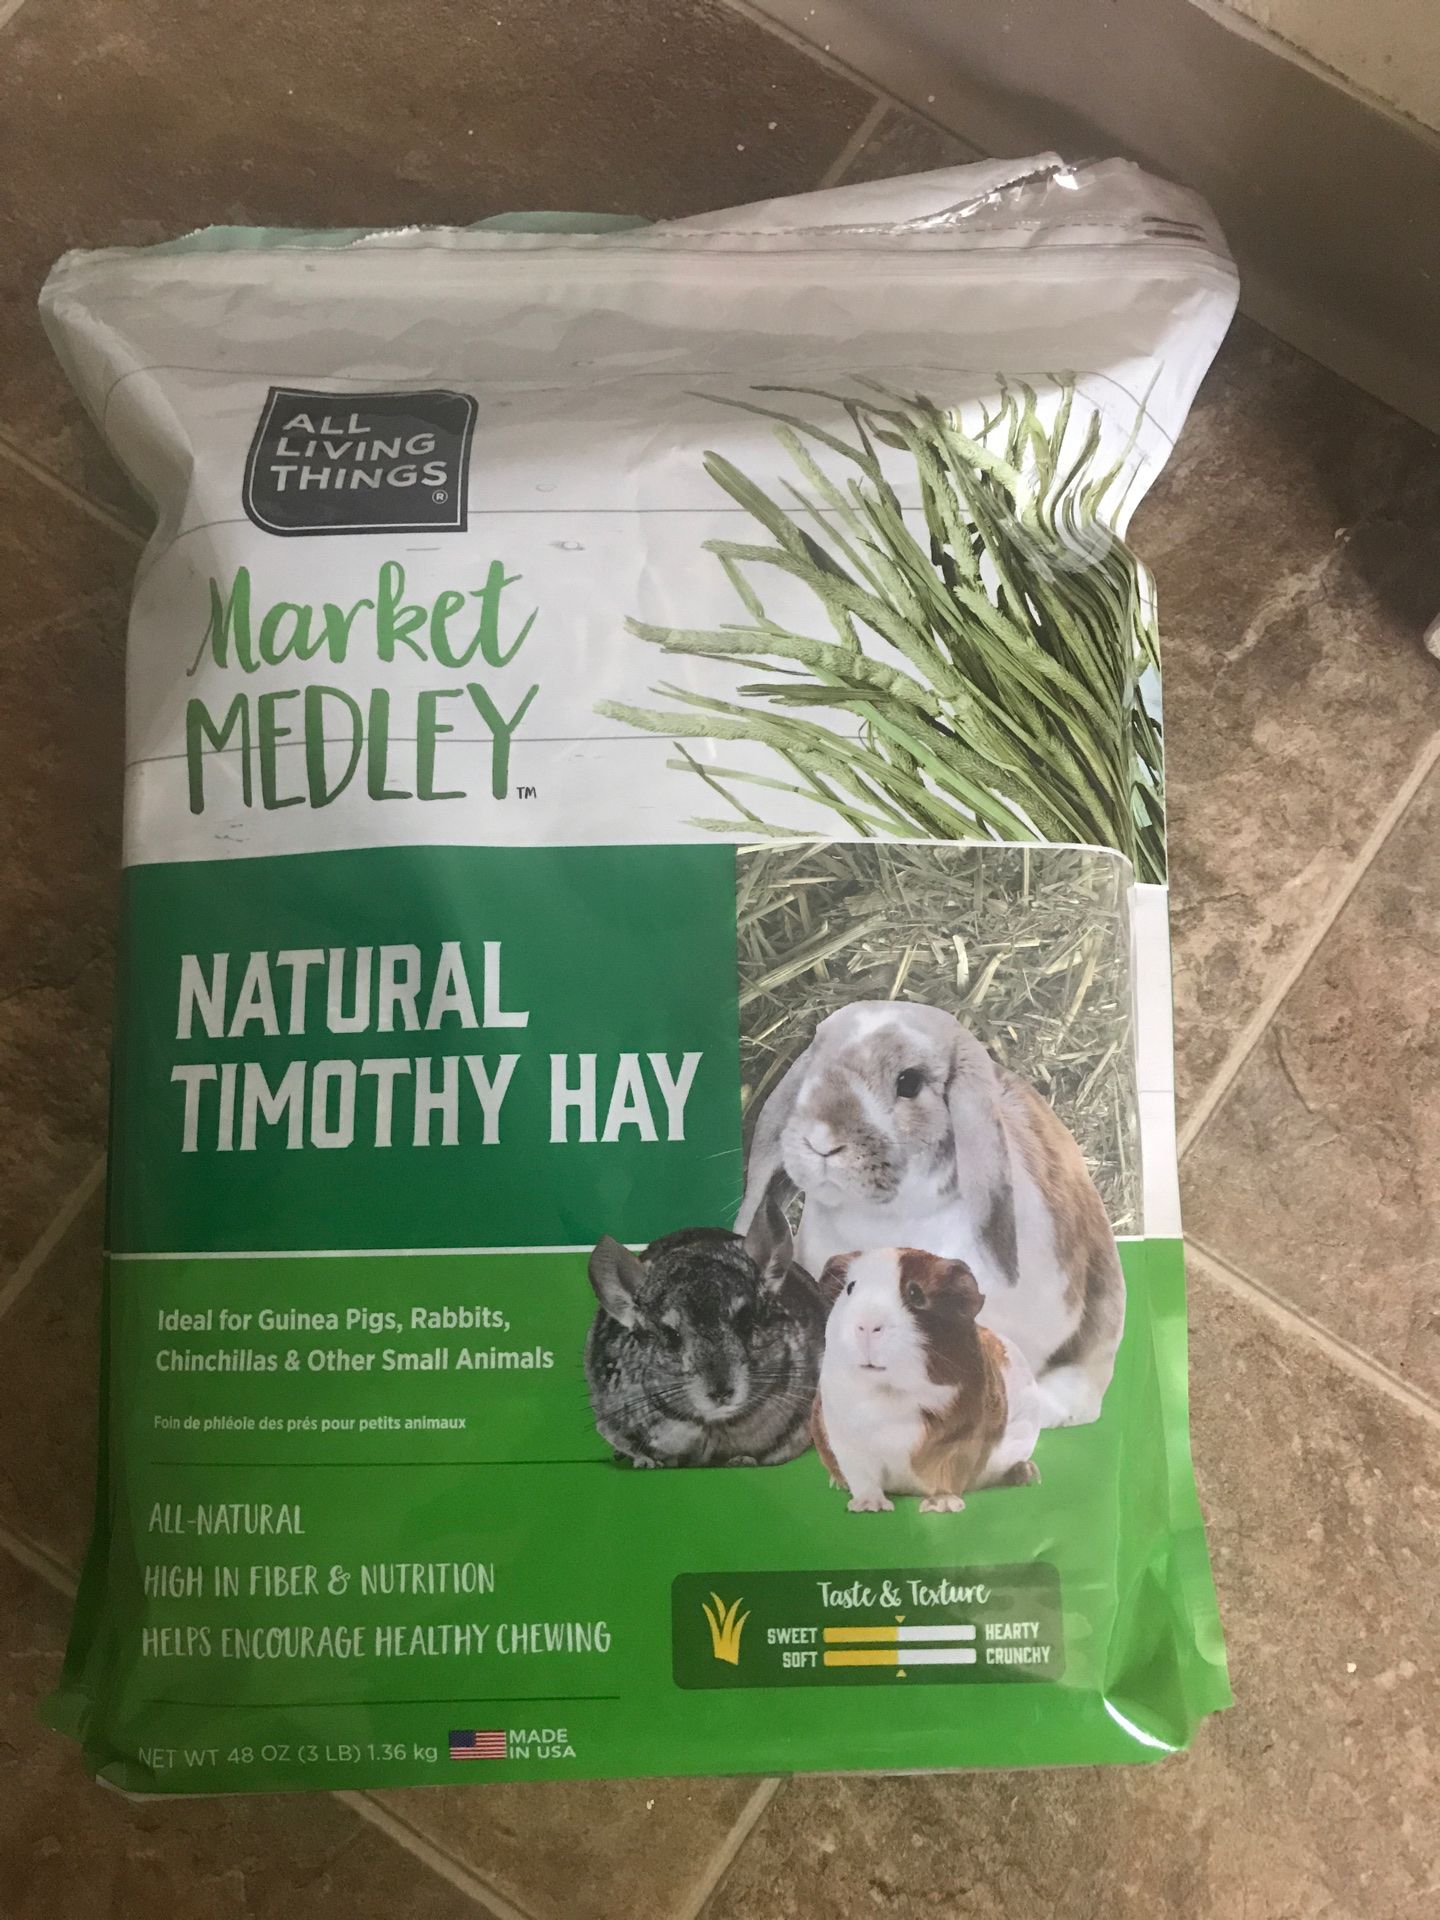 Natural Timothy hay